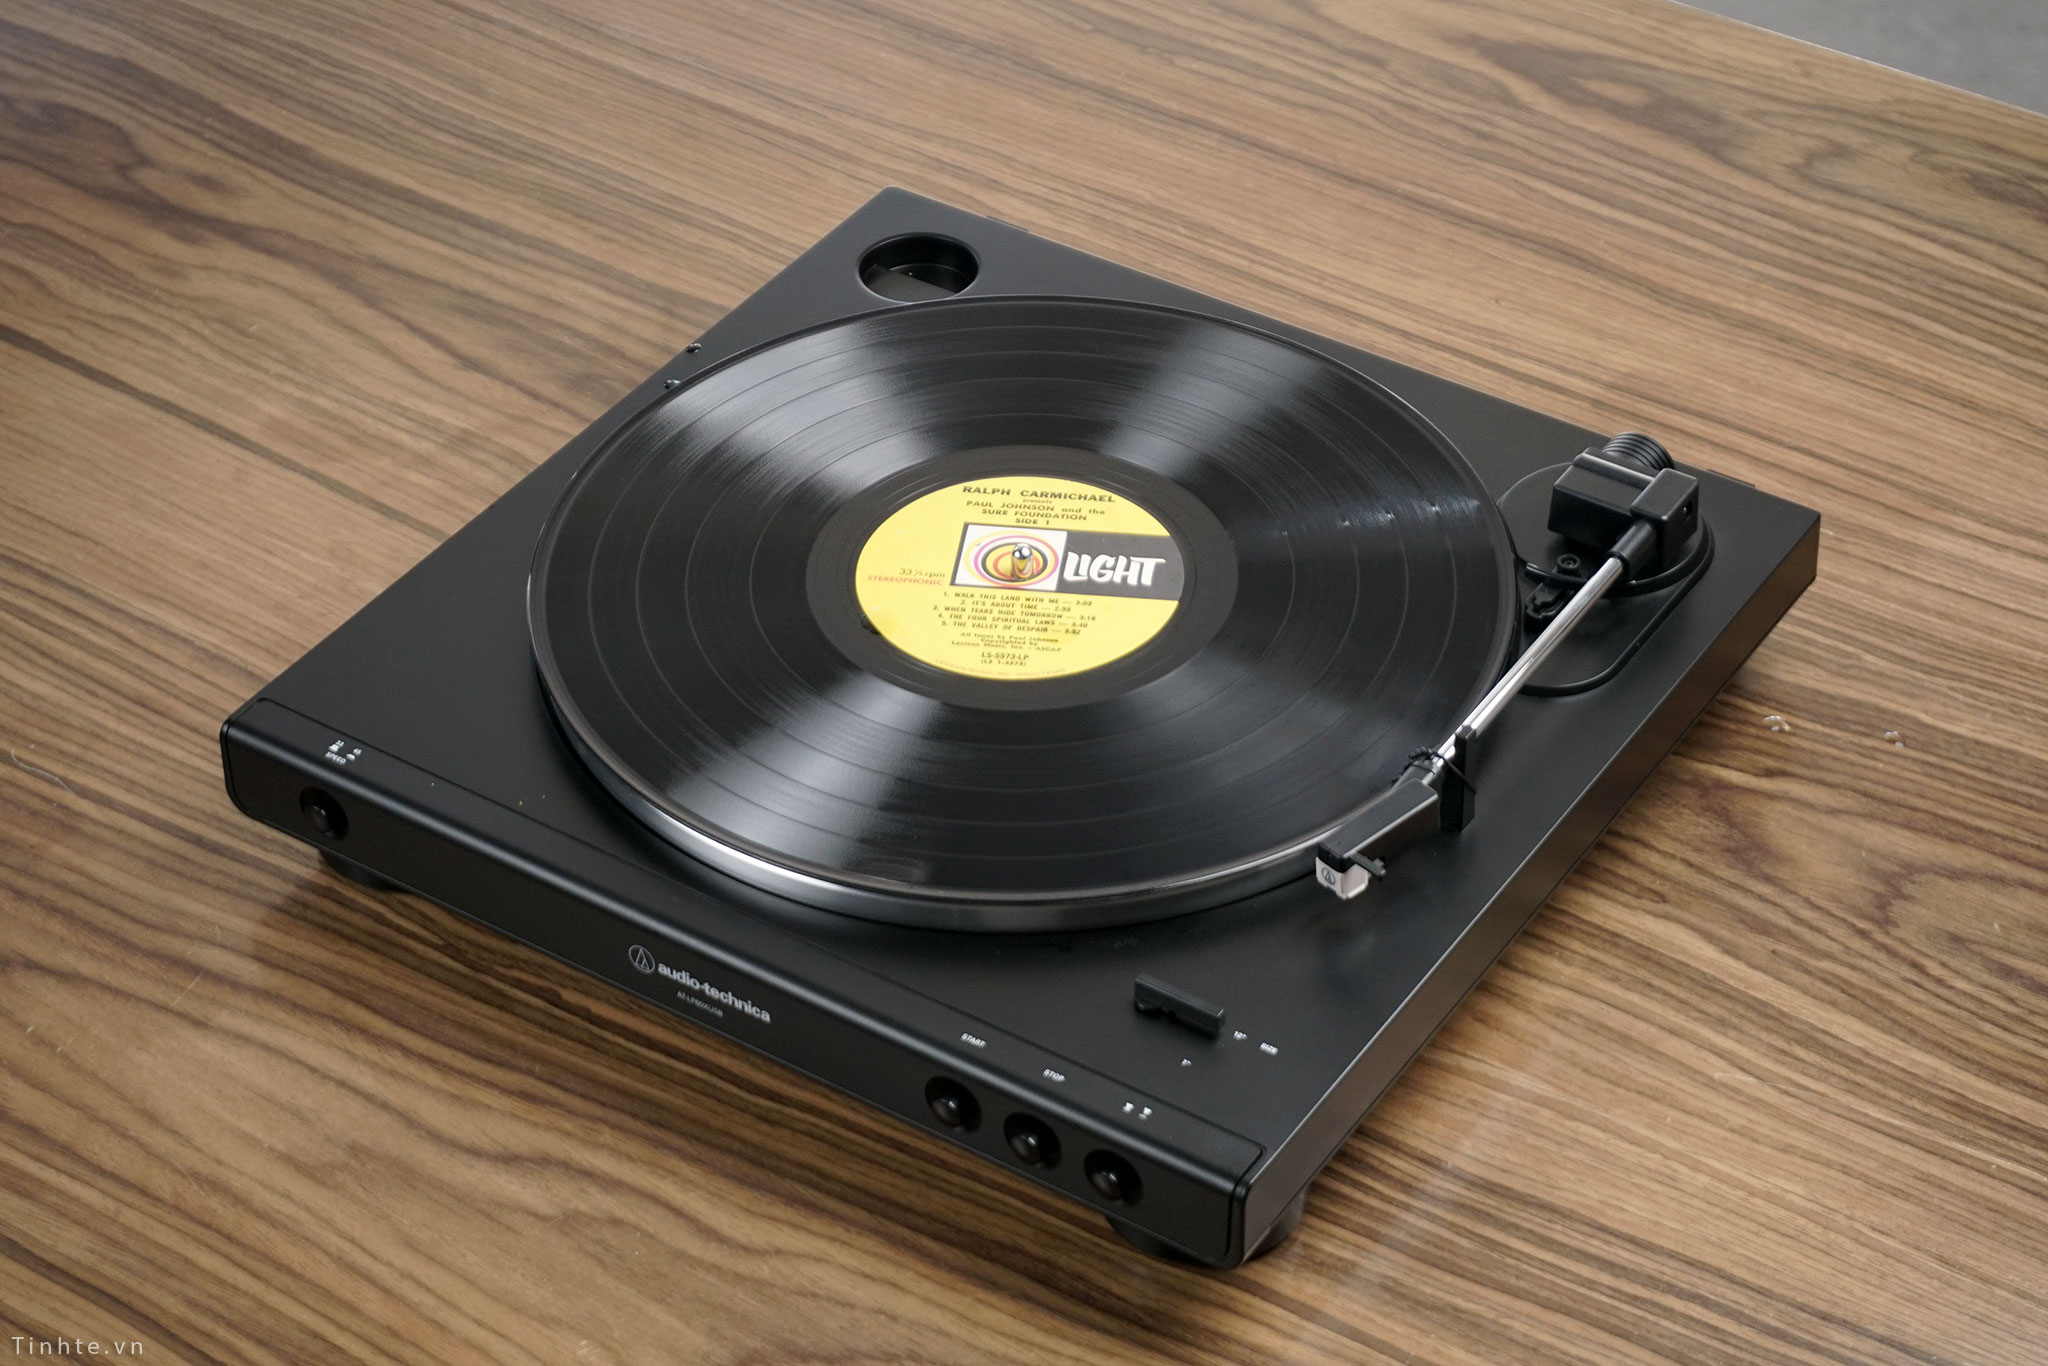 Mở hộp và trên tay mâm vinyl giá rẻ AT-LP60XUSB phù hợp cho người mới chơi vinyl